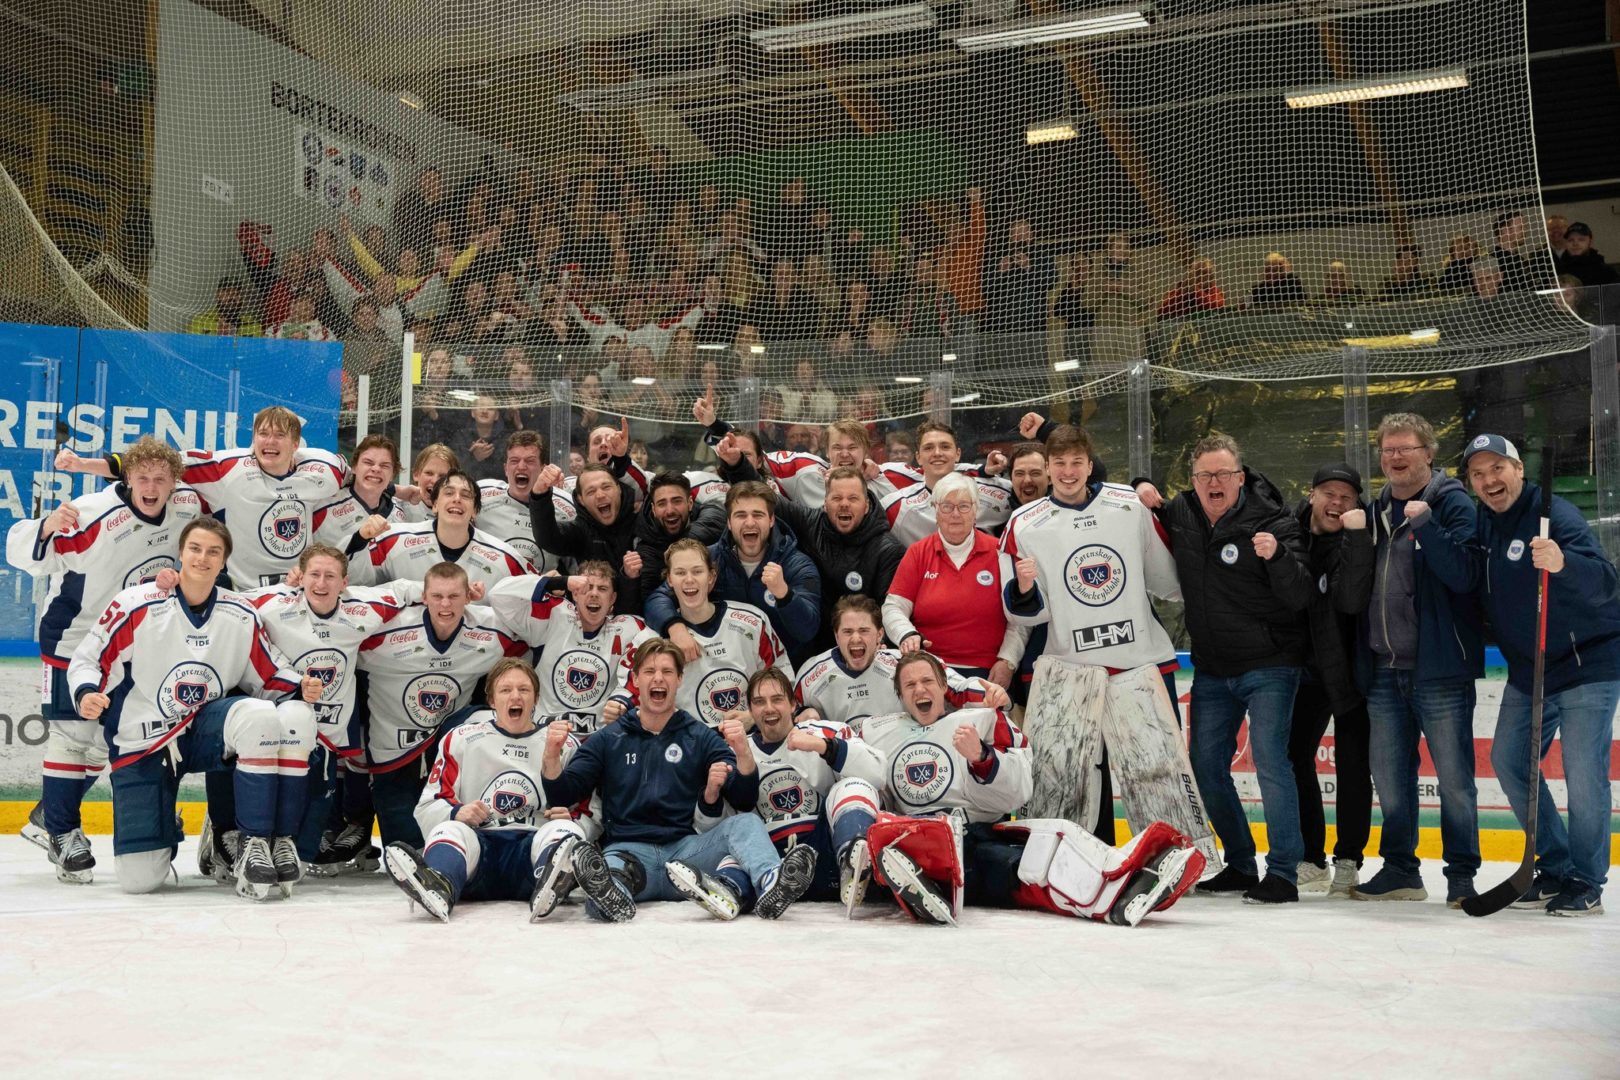 Spillerne fra Lørenskog ishockeyklubb heier foran et bilde, med fans i bakgrunnen